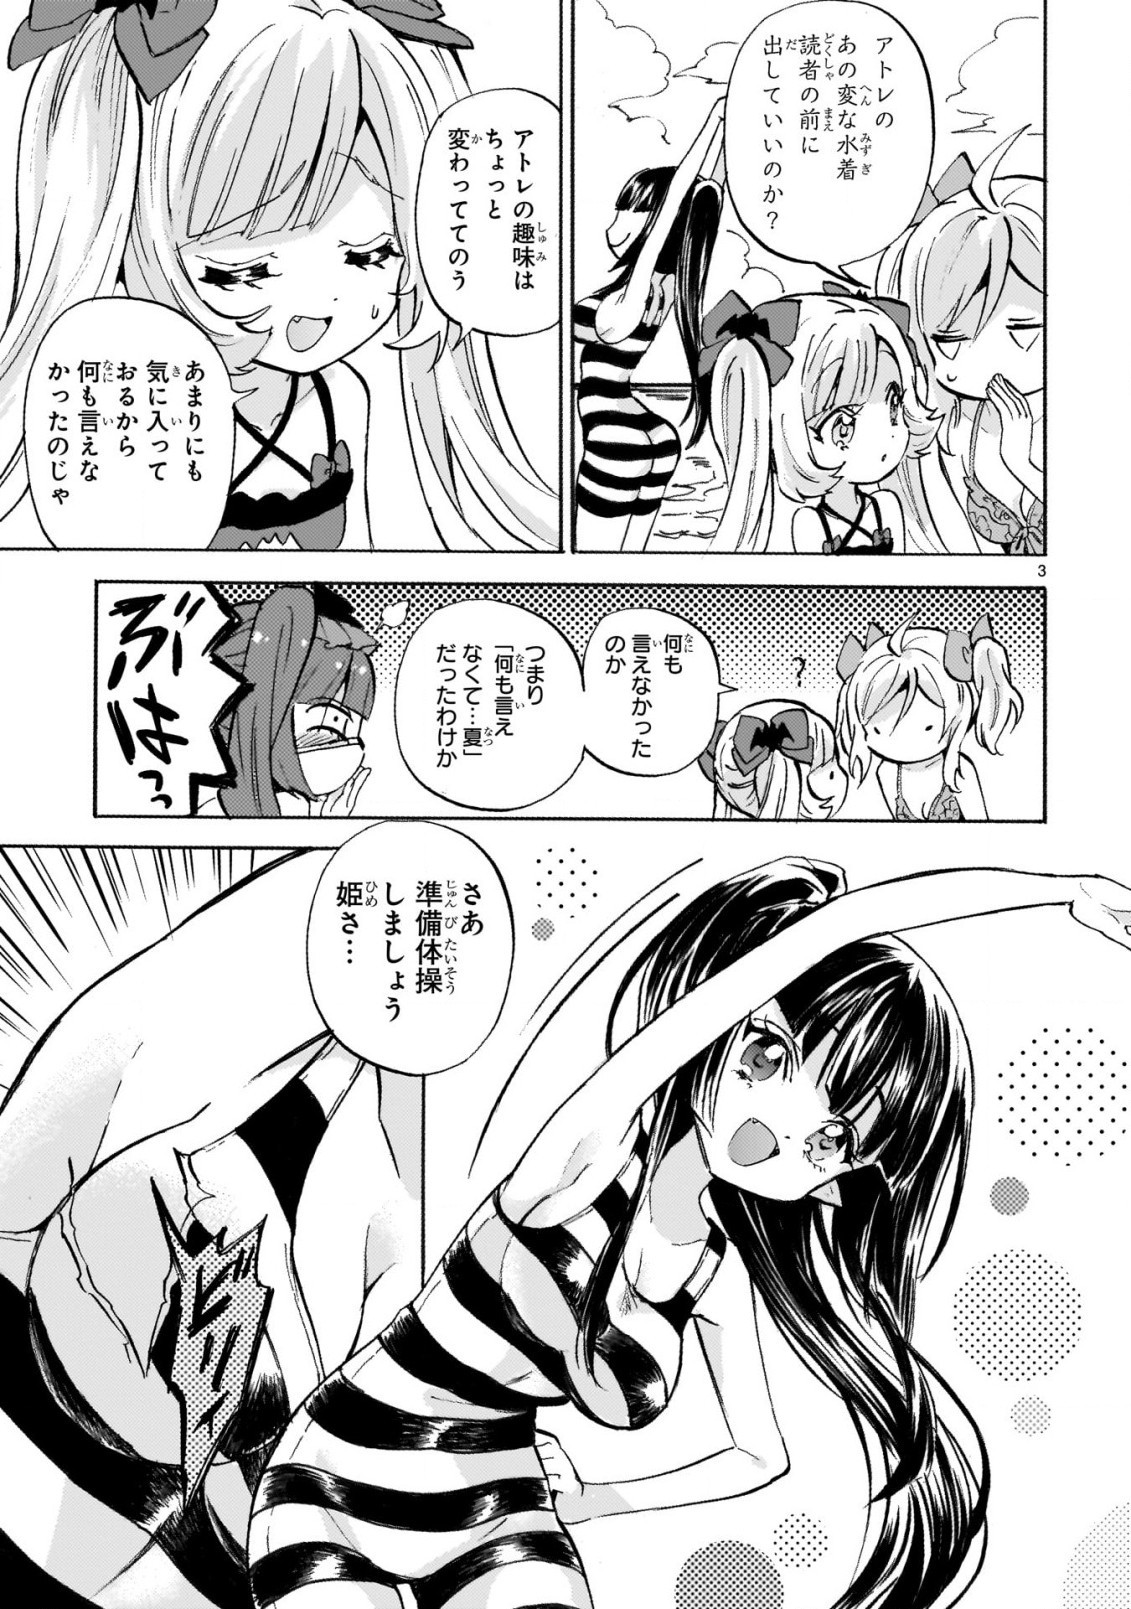 Jashin-chan Dropkick - Chapter 238-1 - Page 3